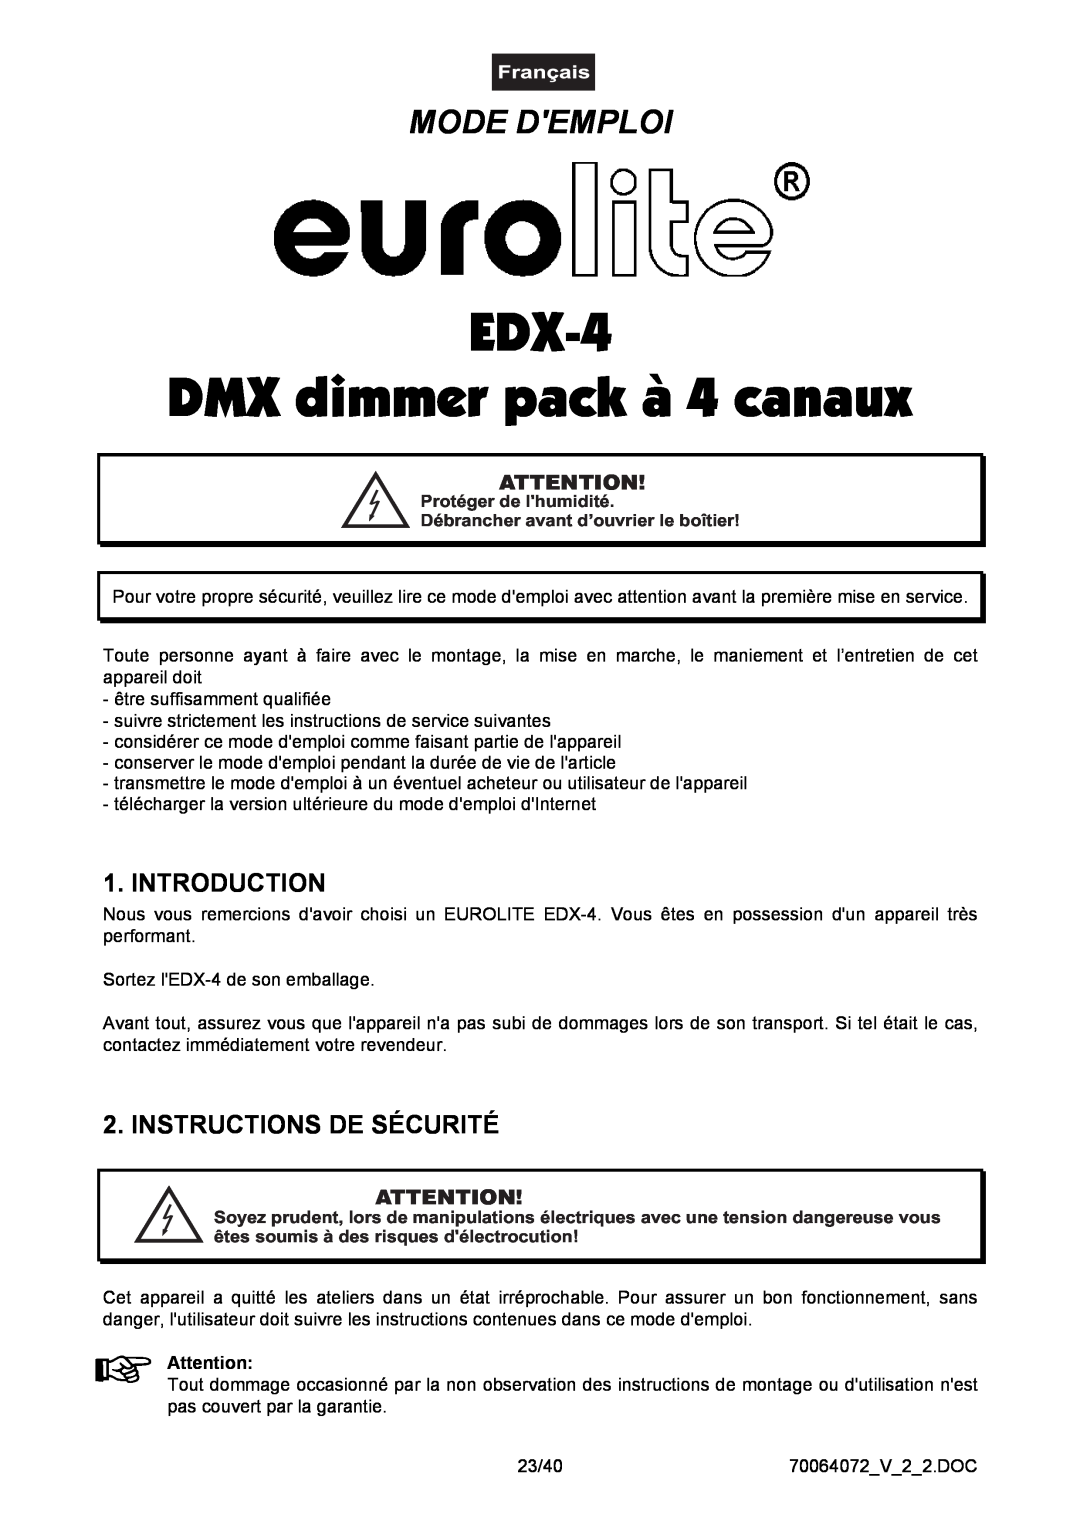 EuroLite Cases 4-channel DMX dimmer pack EDX-4, Mode Demploi, Instructions De Sécurité, DMX dimmer pack à 4 canaux 